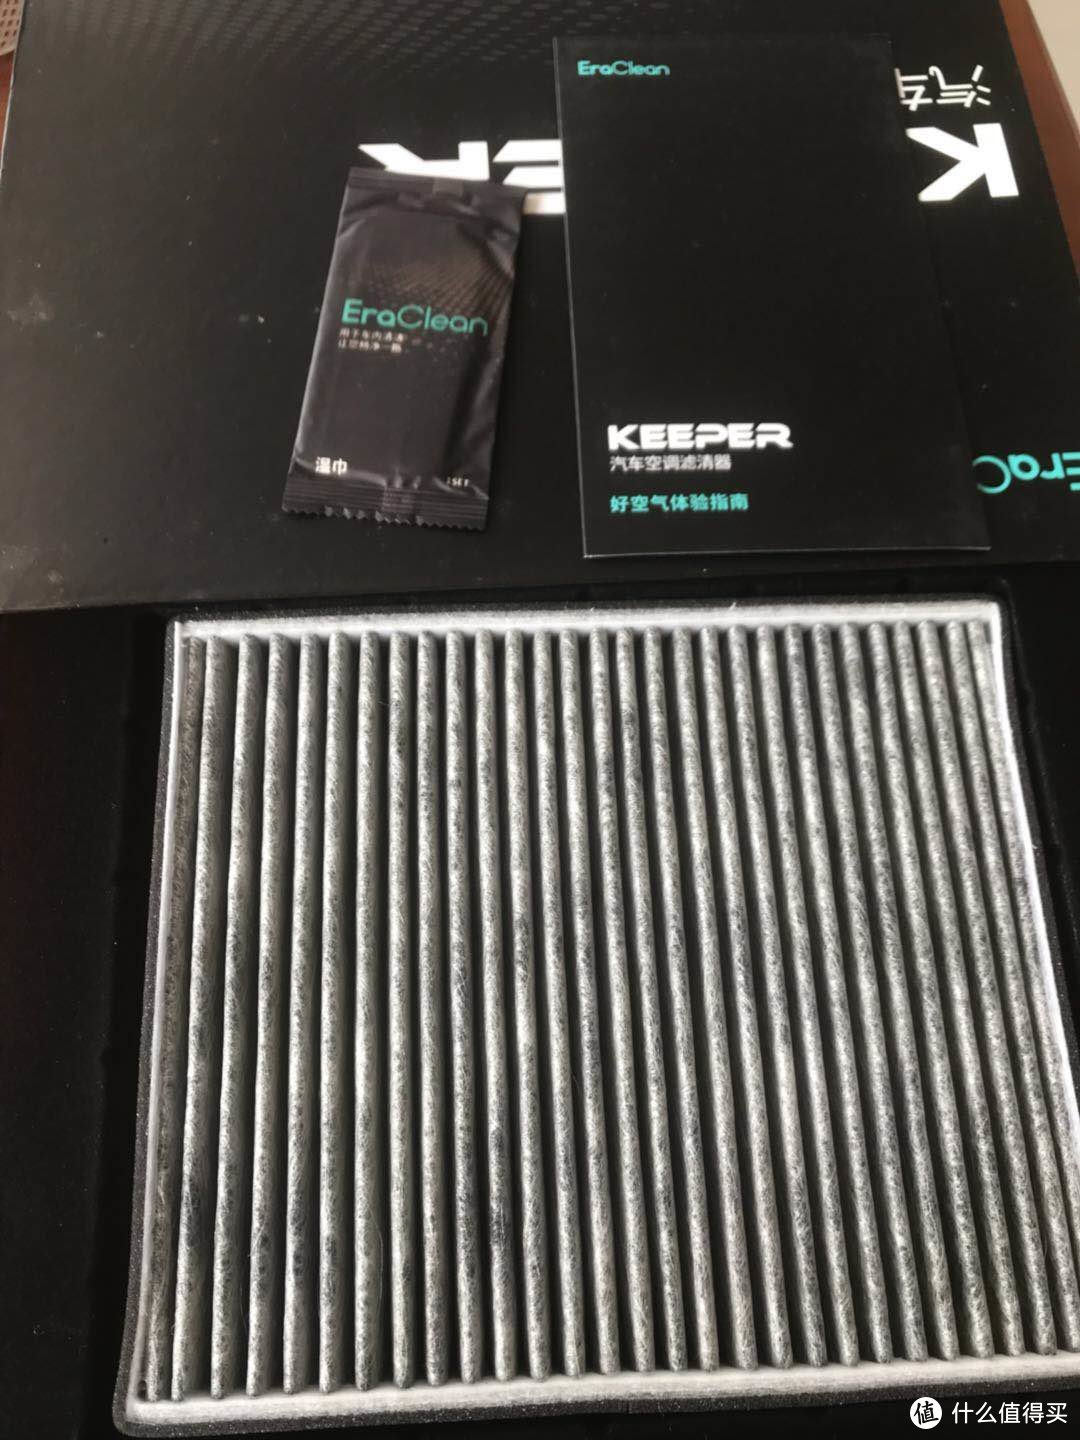 EraClean Keeper空调滤芯，不输国外品牌的中国芯